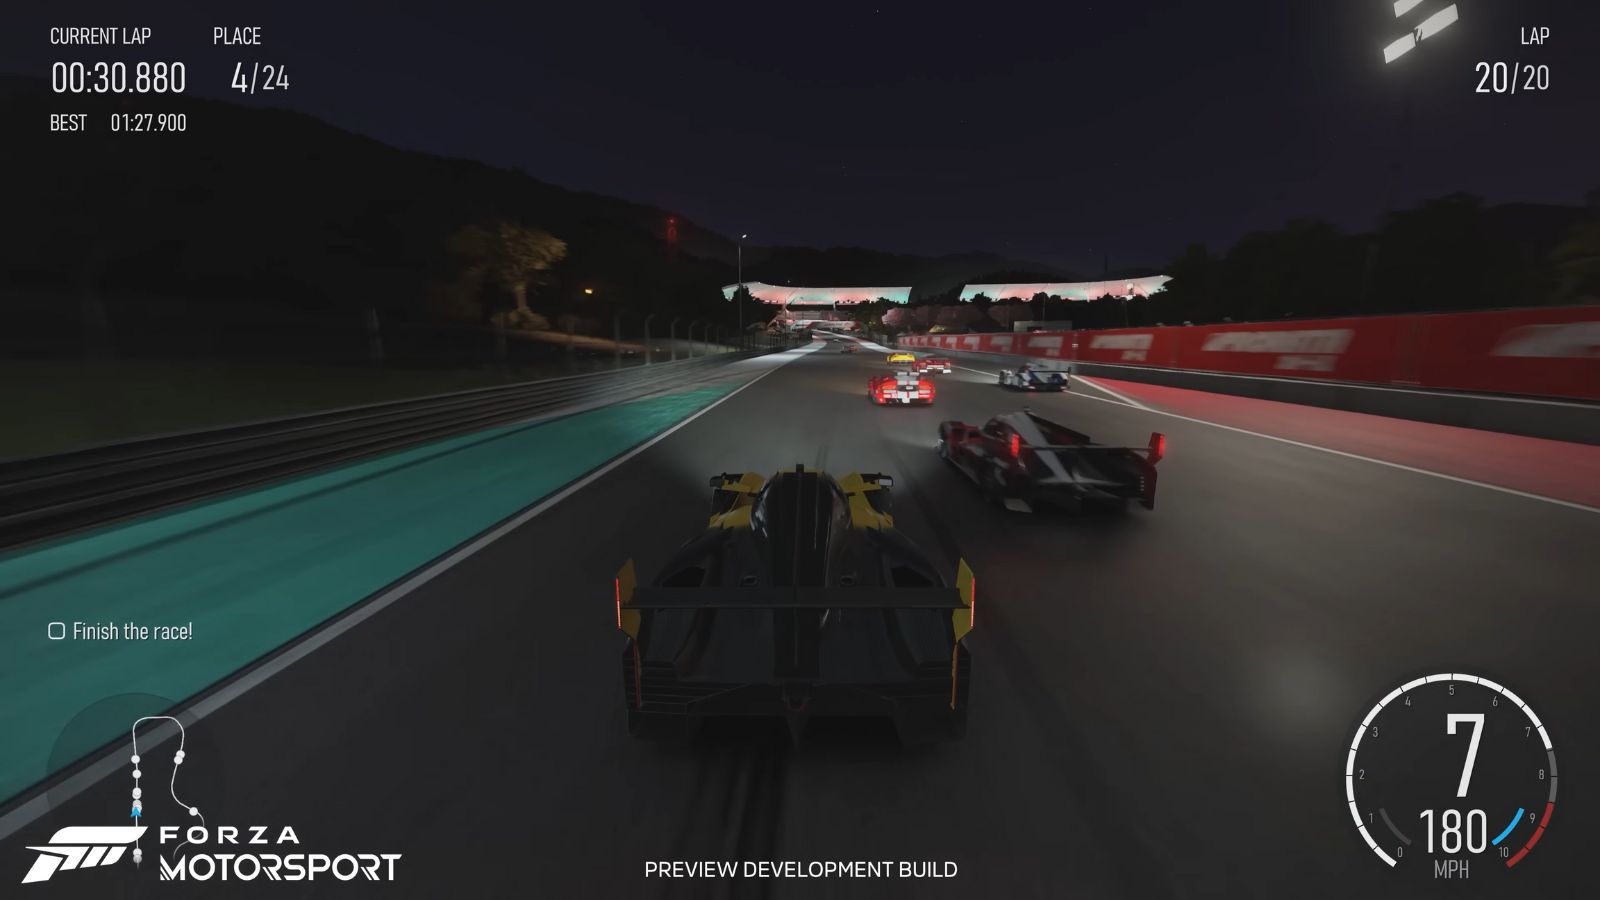 رسومات Forza Motorsport النابضة بالحياة تخدع اللاعبين وتجعلهم يعتقدون أنها لقطات حقيقية